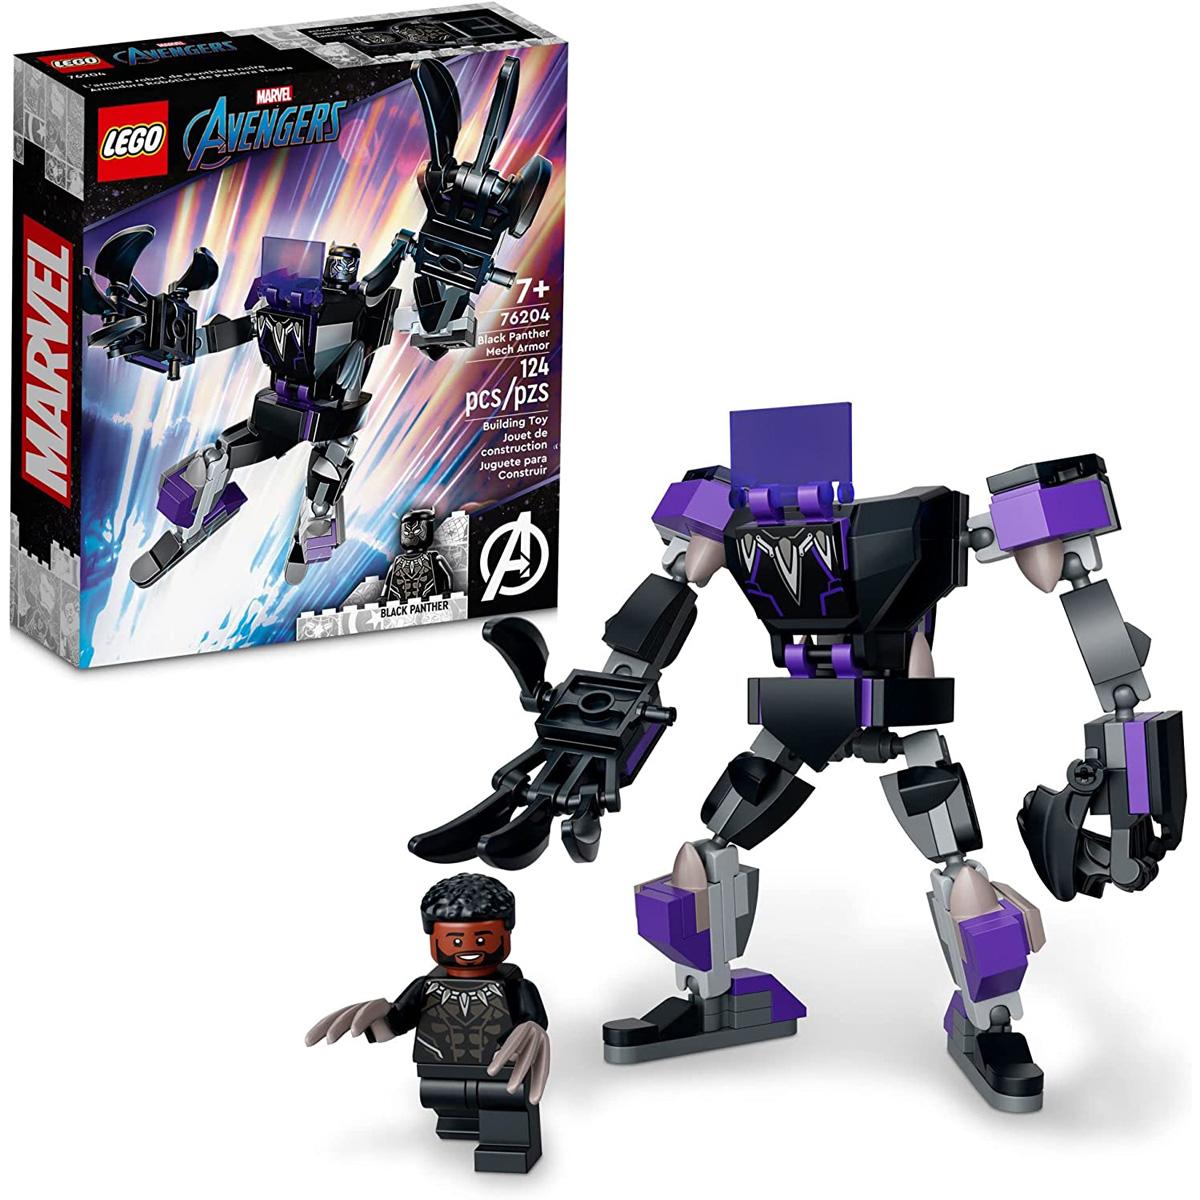 Lego Marvel Black Panther Mech Armor Building Kit for $5.59